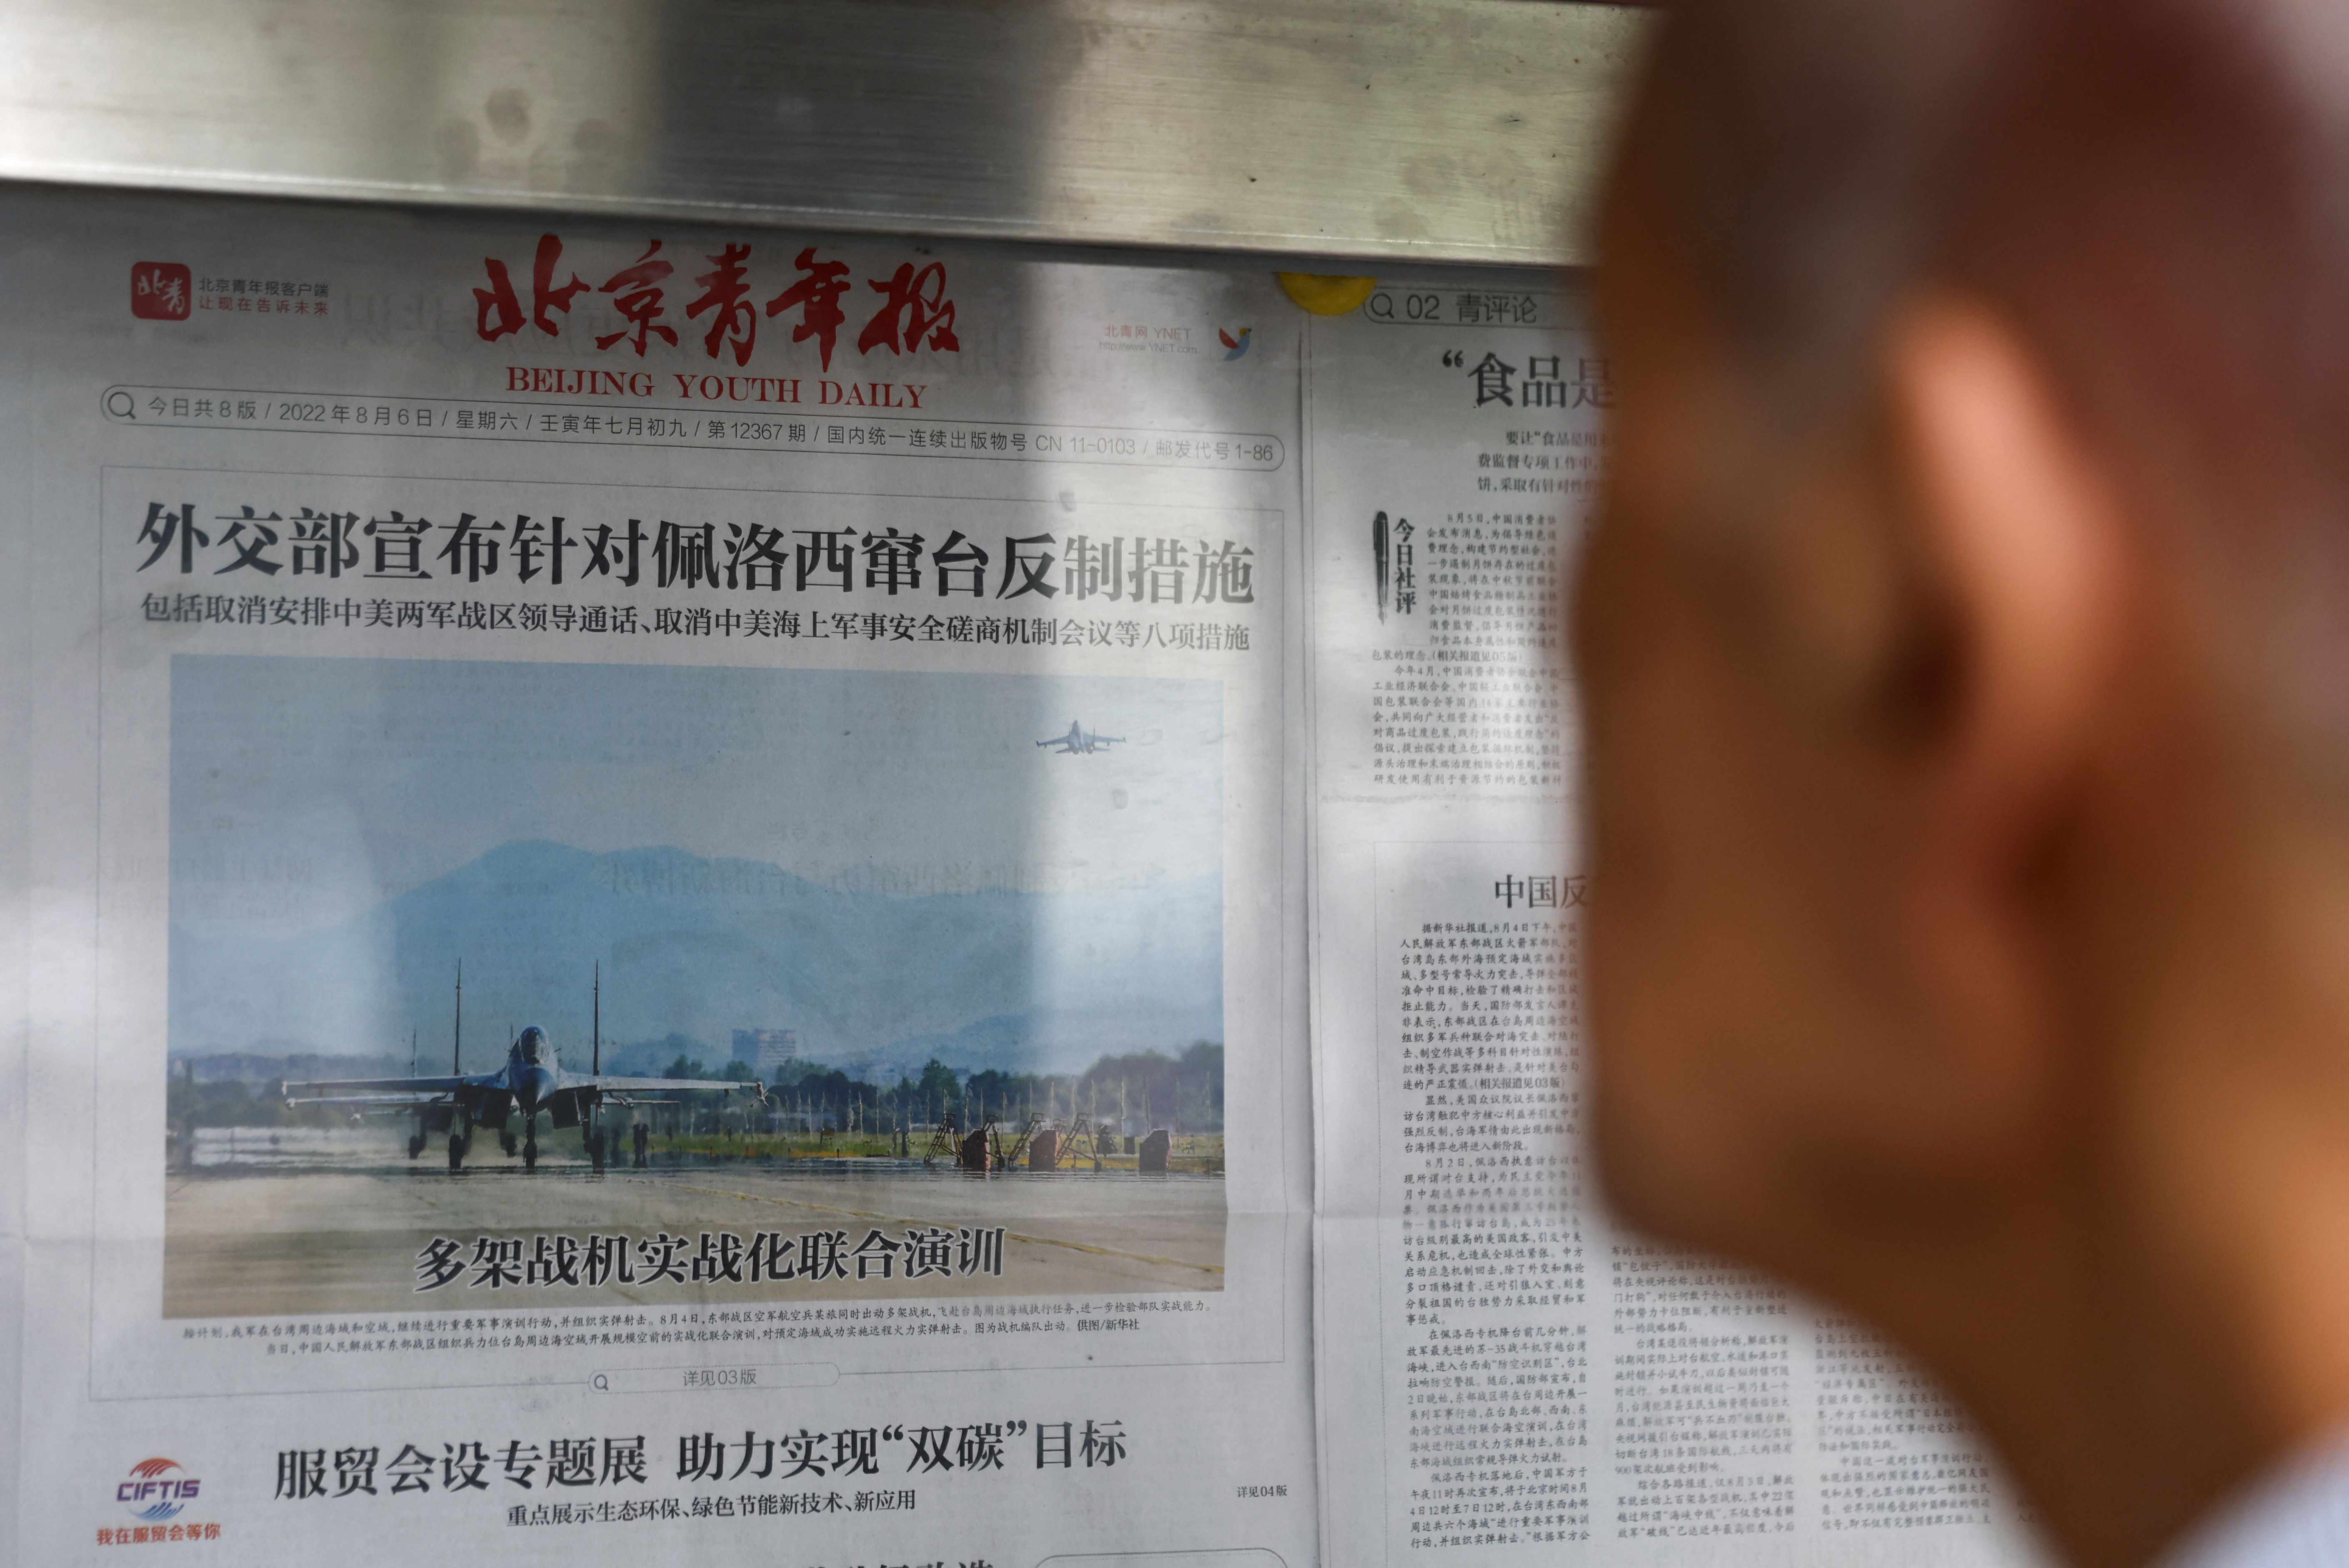 مردی گزارش روزنامه ای را با تصویری از تمرینات نظامی در نزدیکی تایوان توسط فرماندهی تئاتر شرق ارتش آزادیبخش خلق چین (PLA) در صفحه اول، در غرفه روزنامه در پکن می خواند.